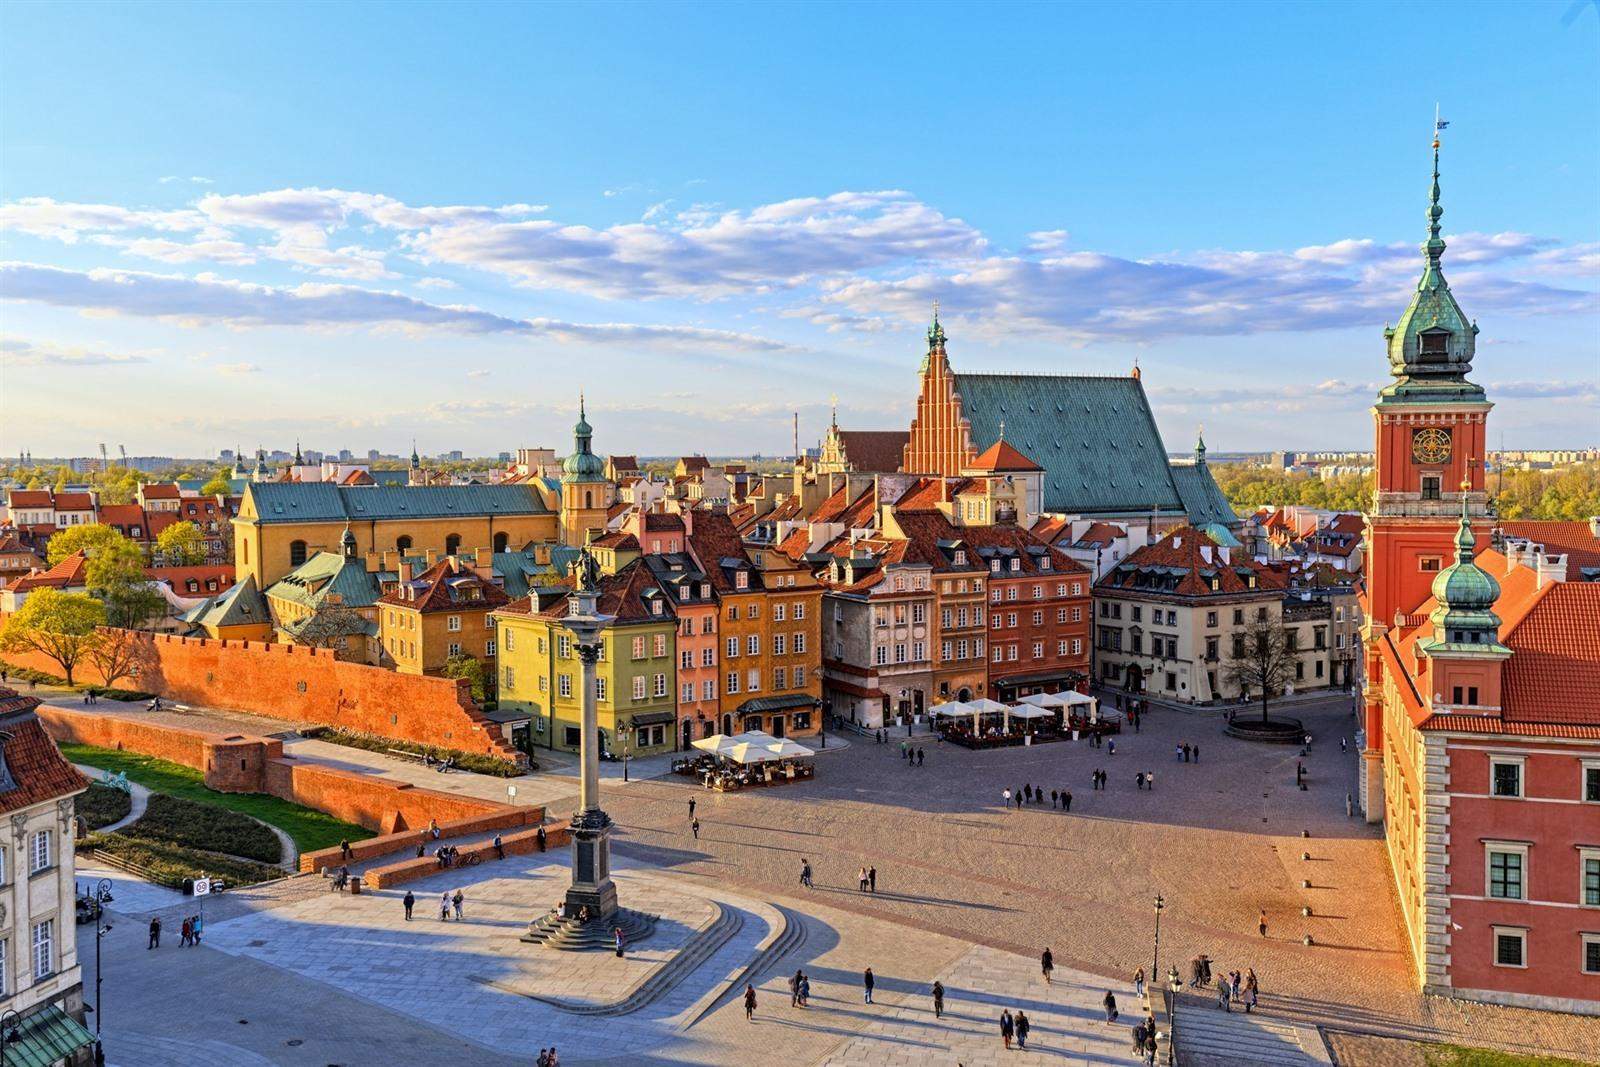 Reis naar Polen, Slowakije en Praag